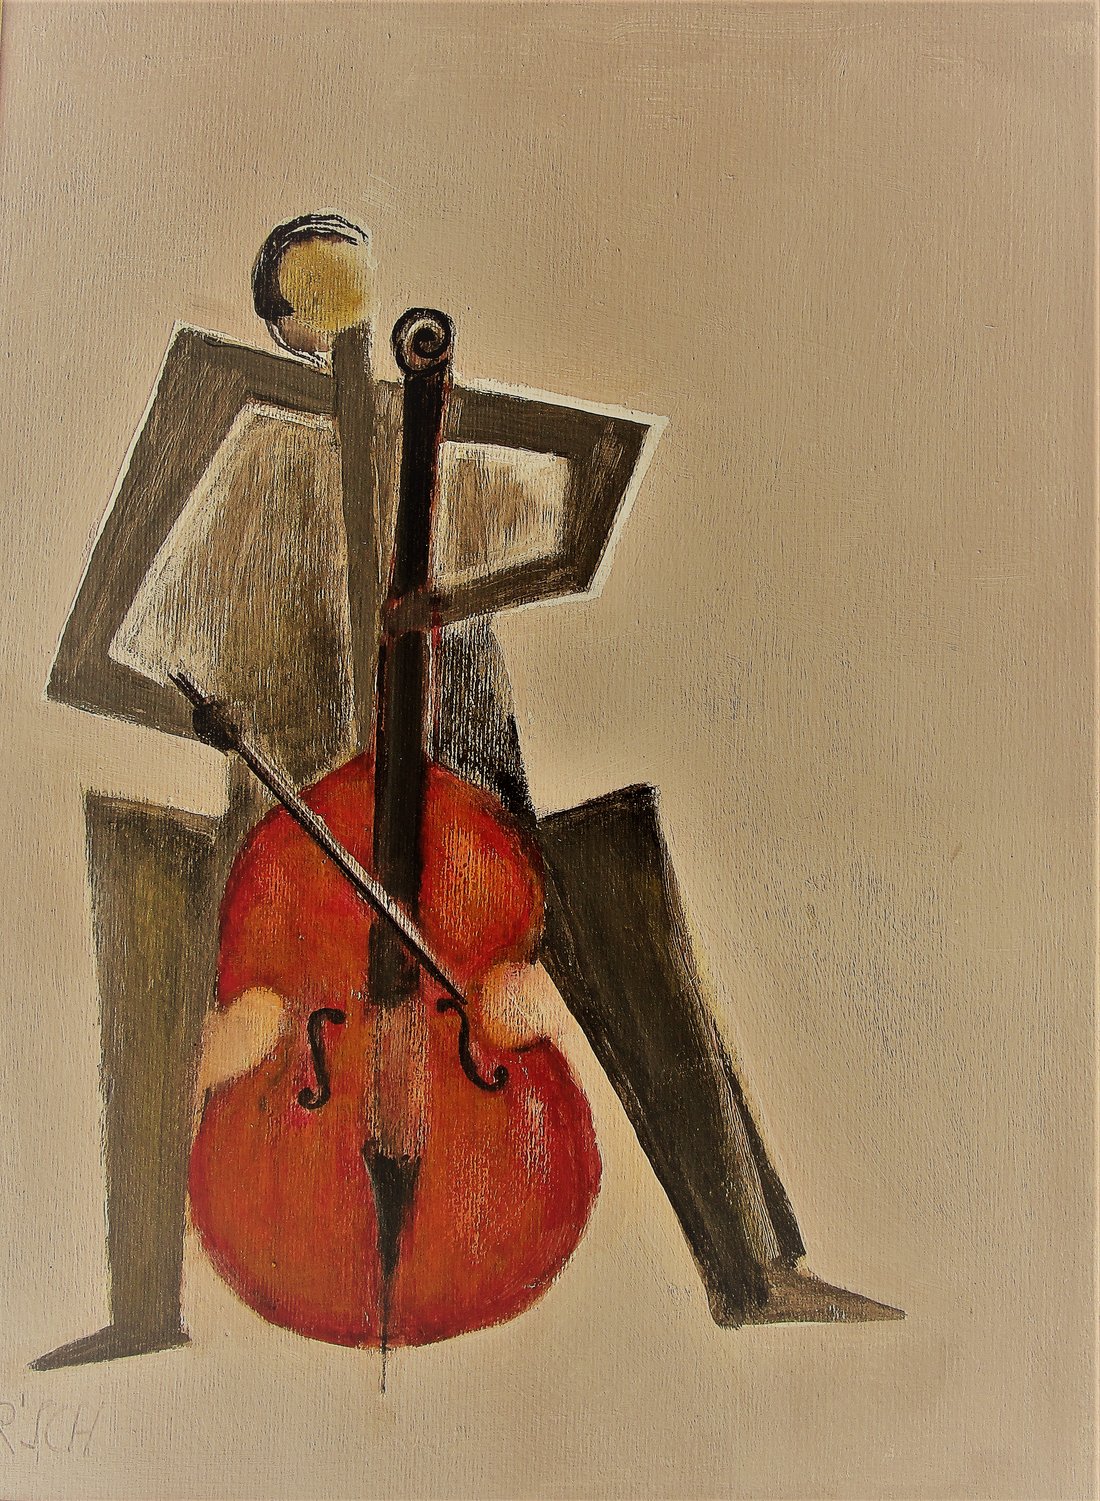 cello-spieler